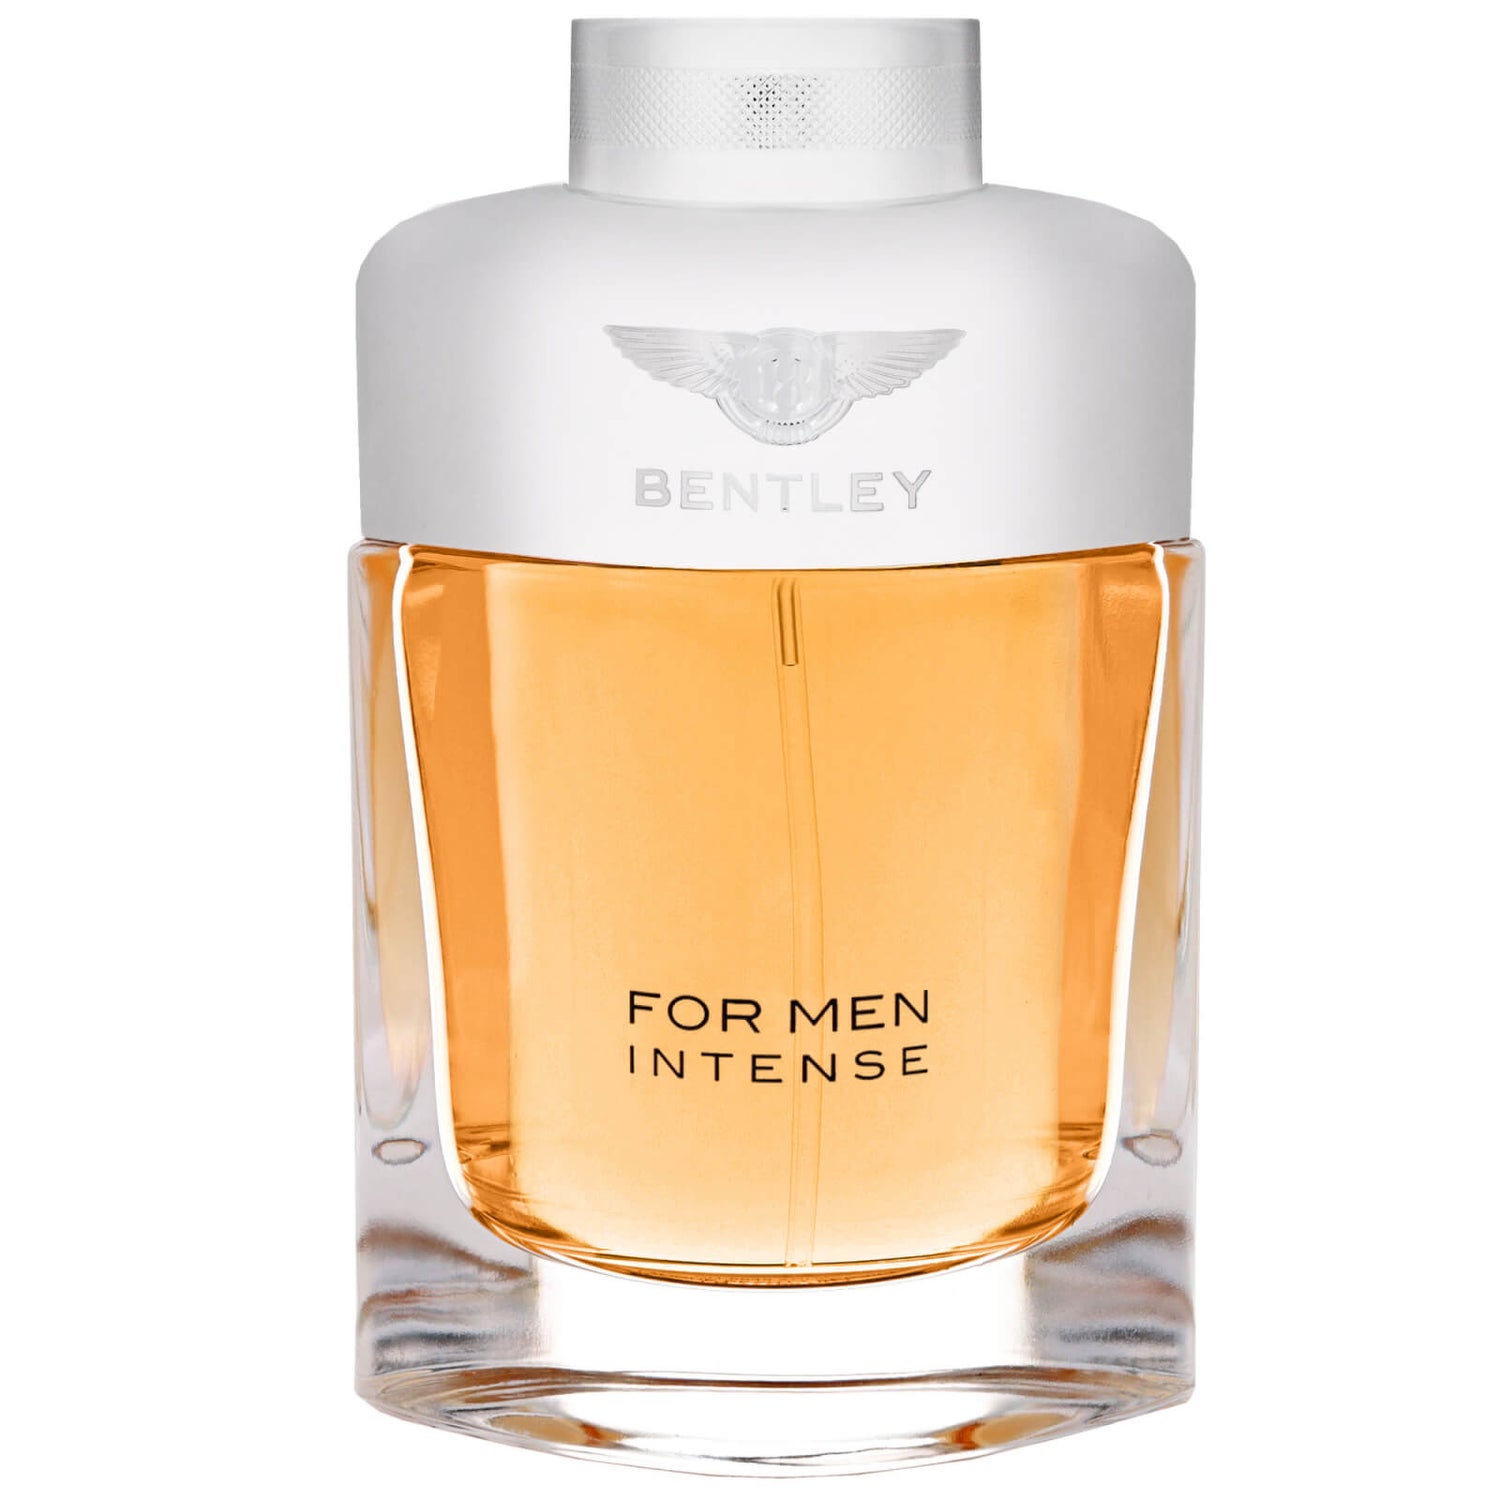 Bentley For Men Intense Eau de Parfum 100 ml Erfahrungen 4.2/5 Sternen